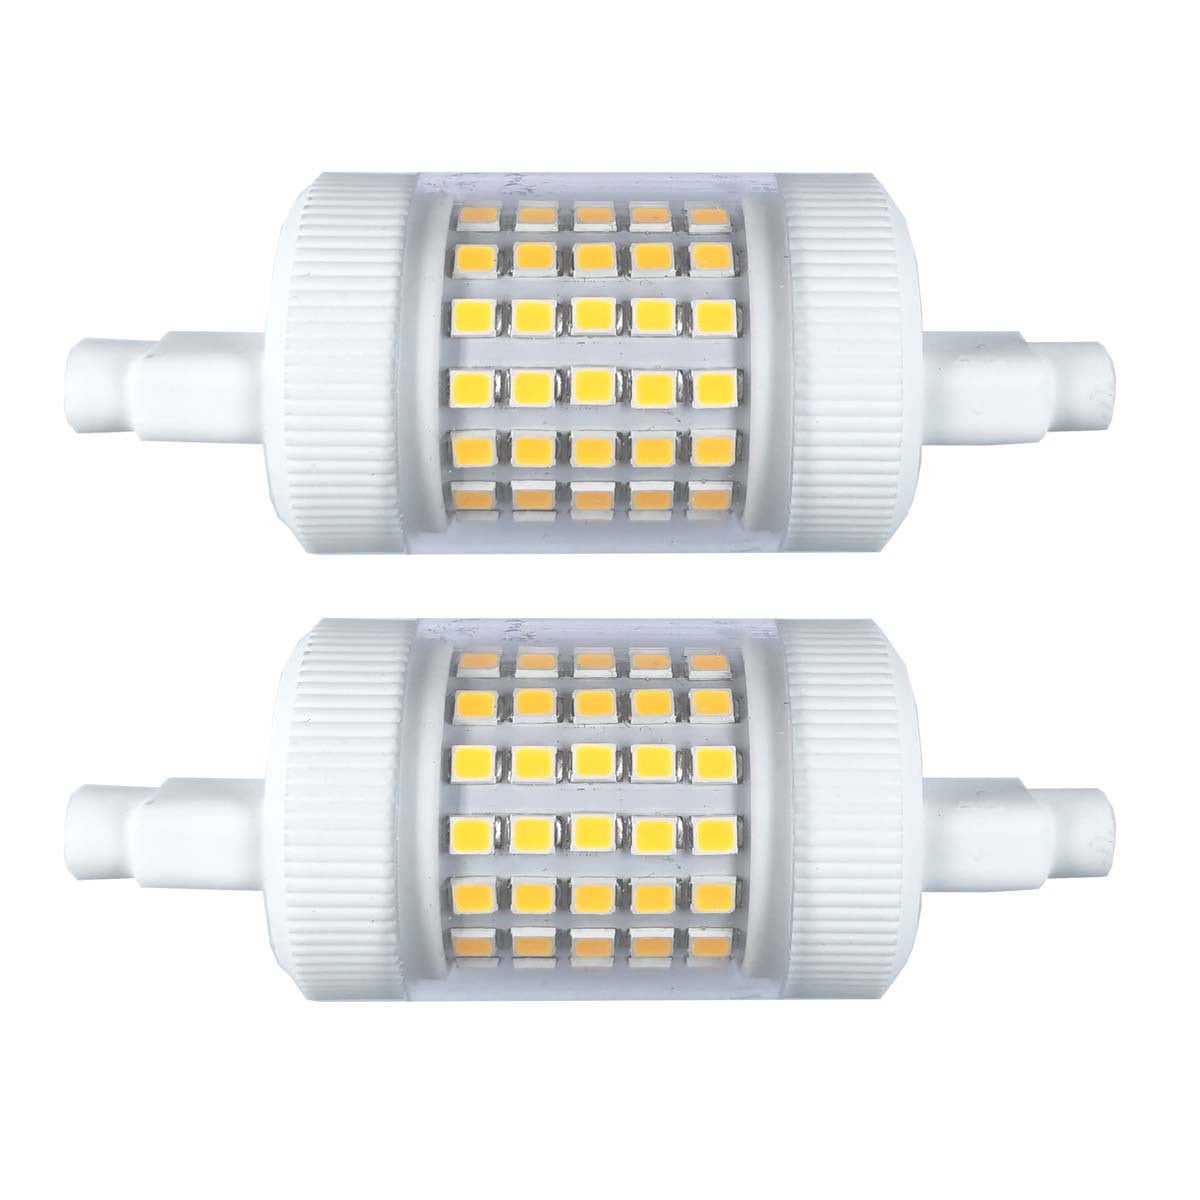 Sylvania 74677 LED12/R7S/830/BL 12 Watt ULTRA LED Specialty T3 Lamp 3000K  R7s Base Blister Pack 150W Equivalent - 6 Pack